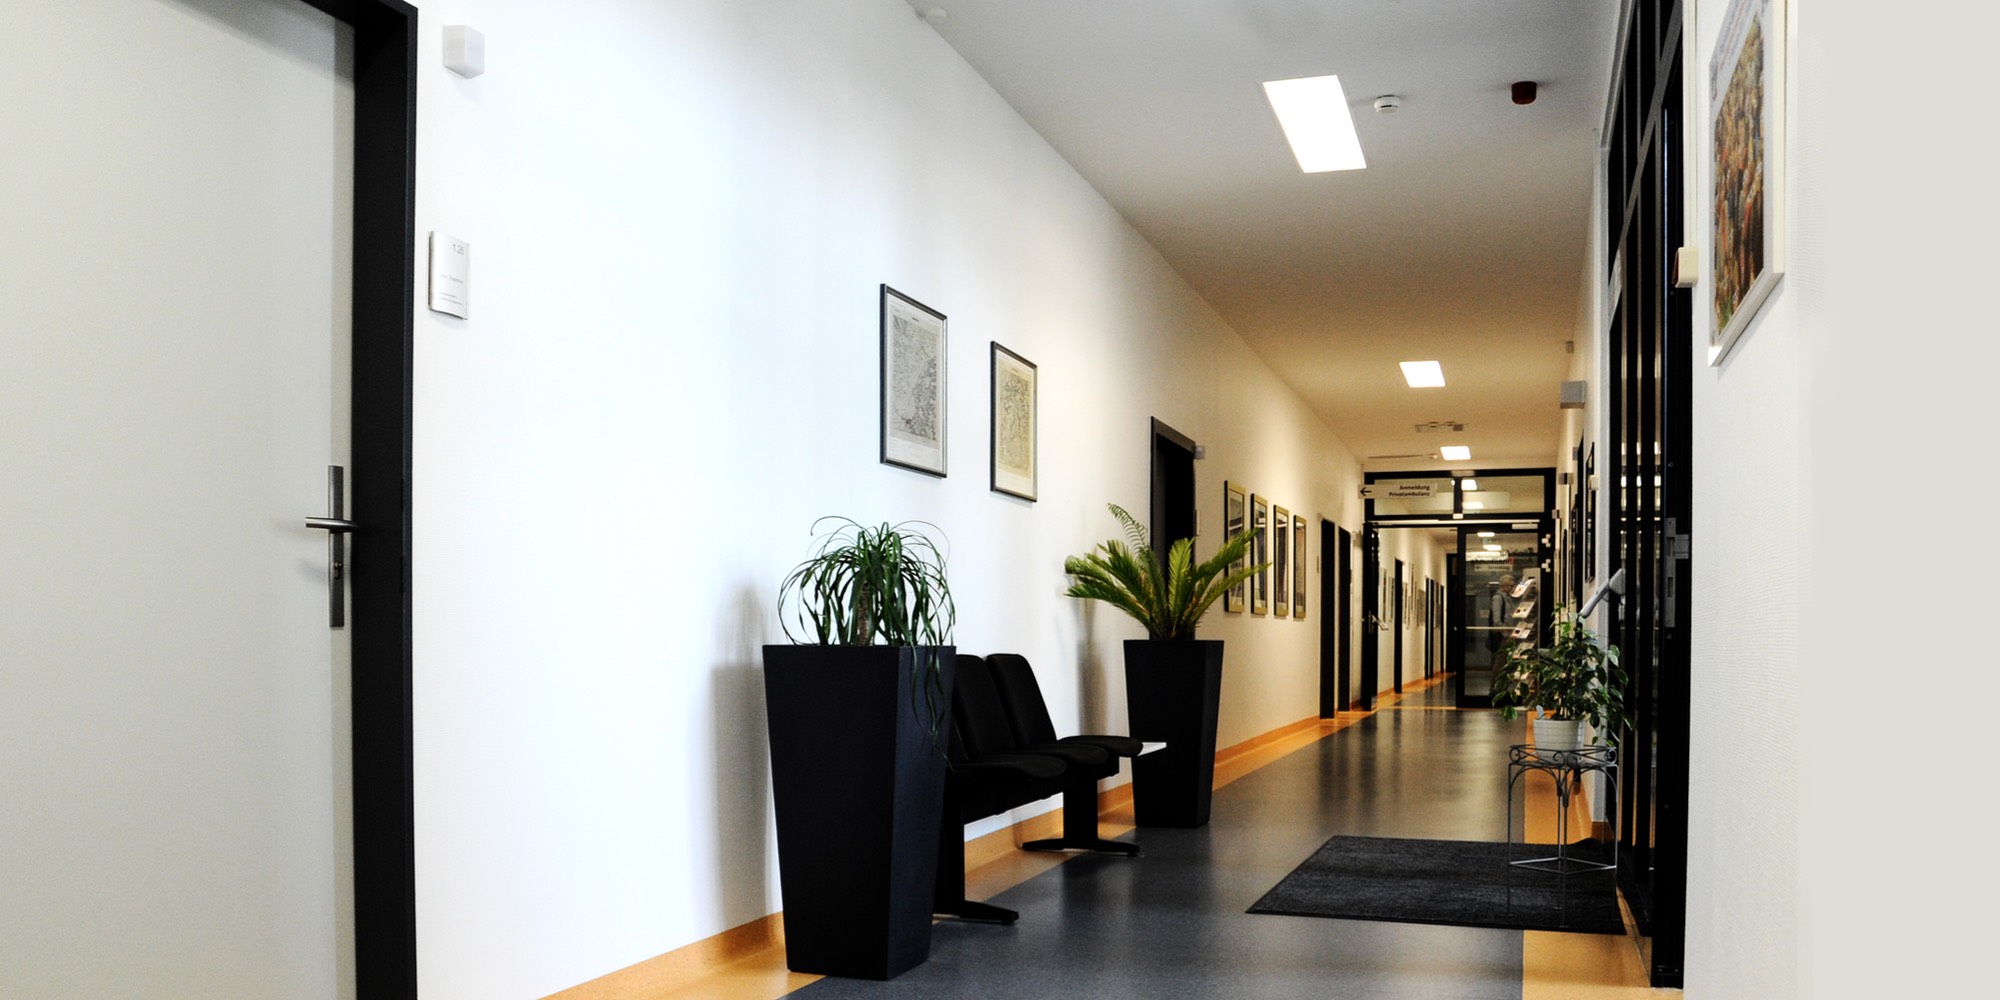 Vue sur le couloir menant aux salles de consultation de la clinique ophtalmologique de Homburg/Saar.